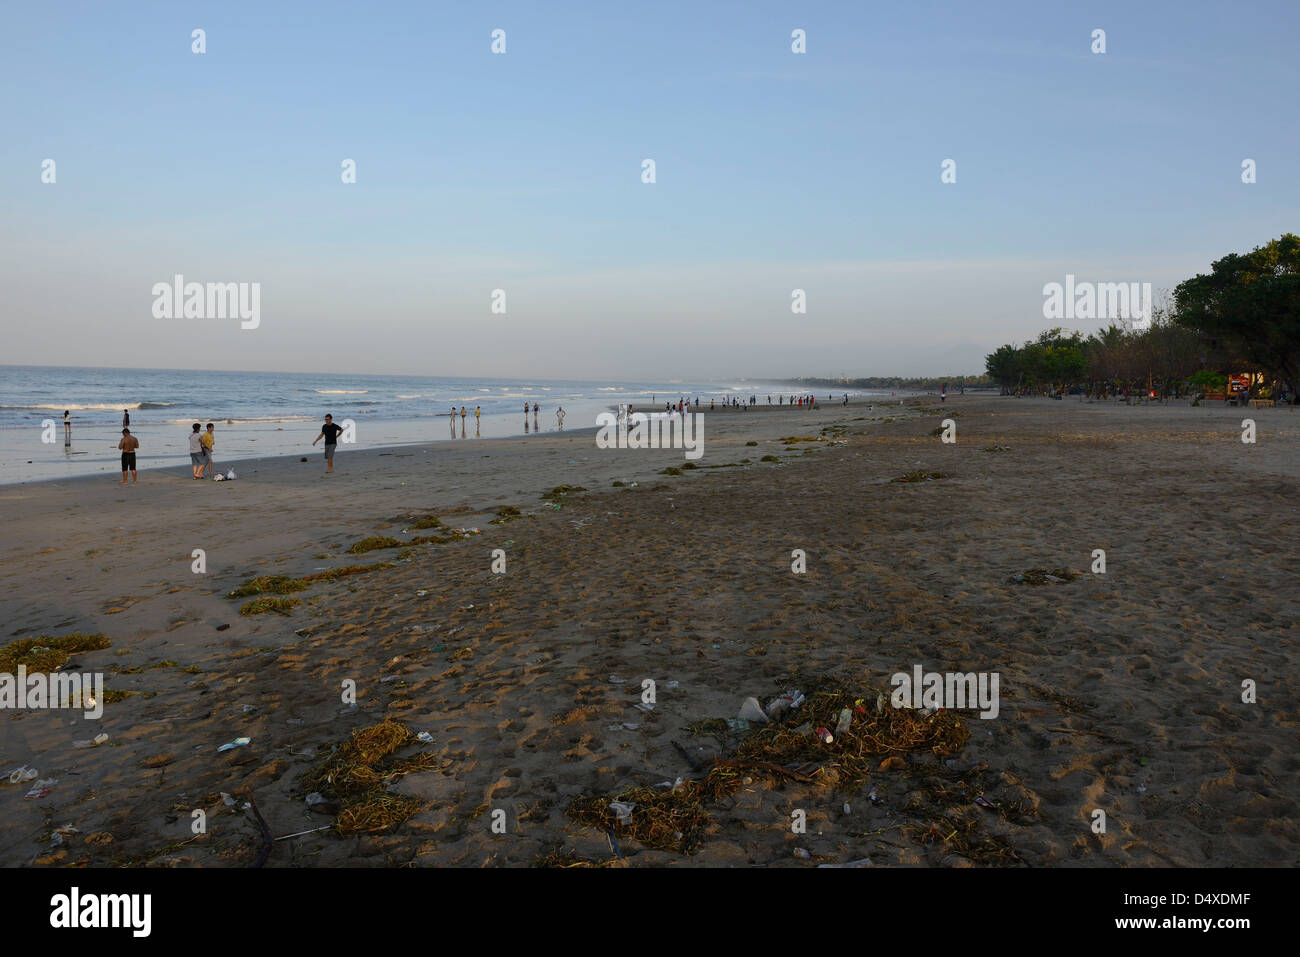 Indonesia, Bali, Kuta, pollution on the beach Stock Photo